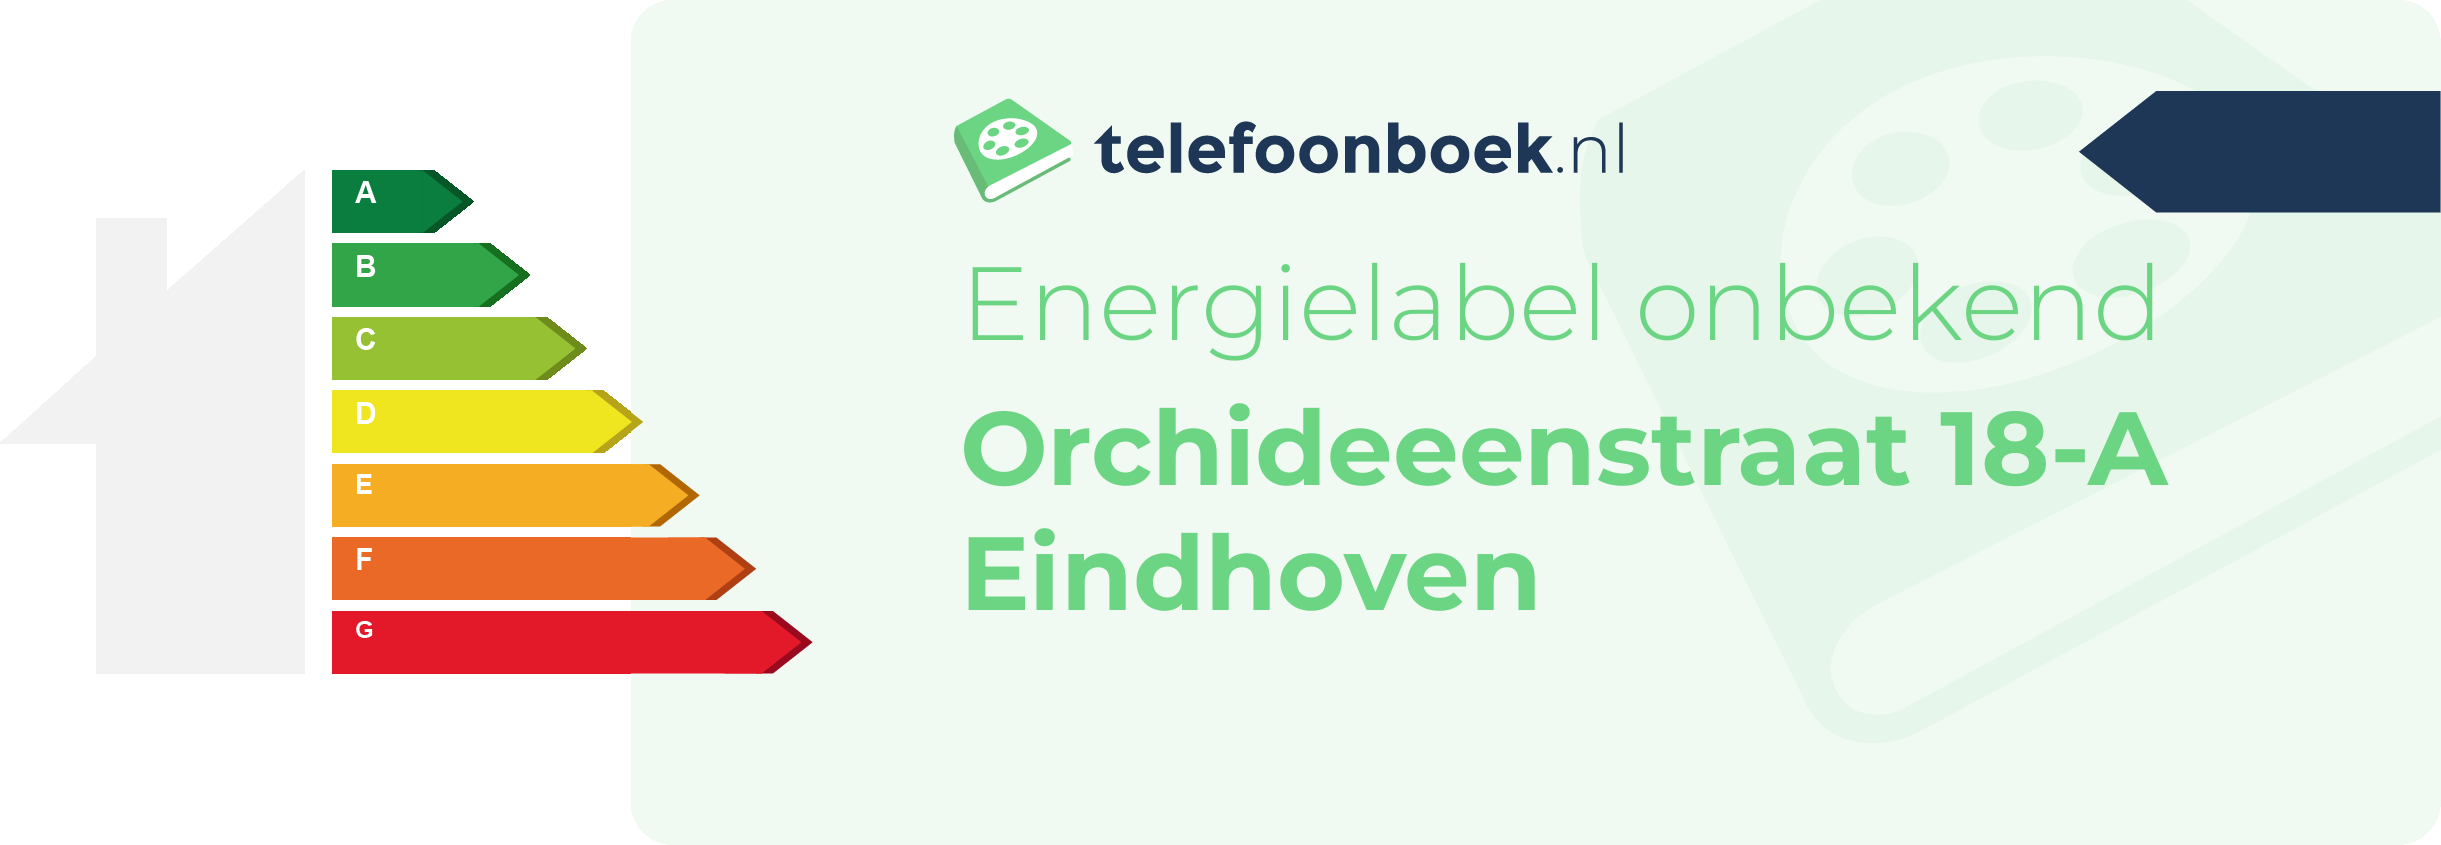 Energielabel Orchideeenstraat 18-A Eindhoven